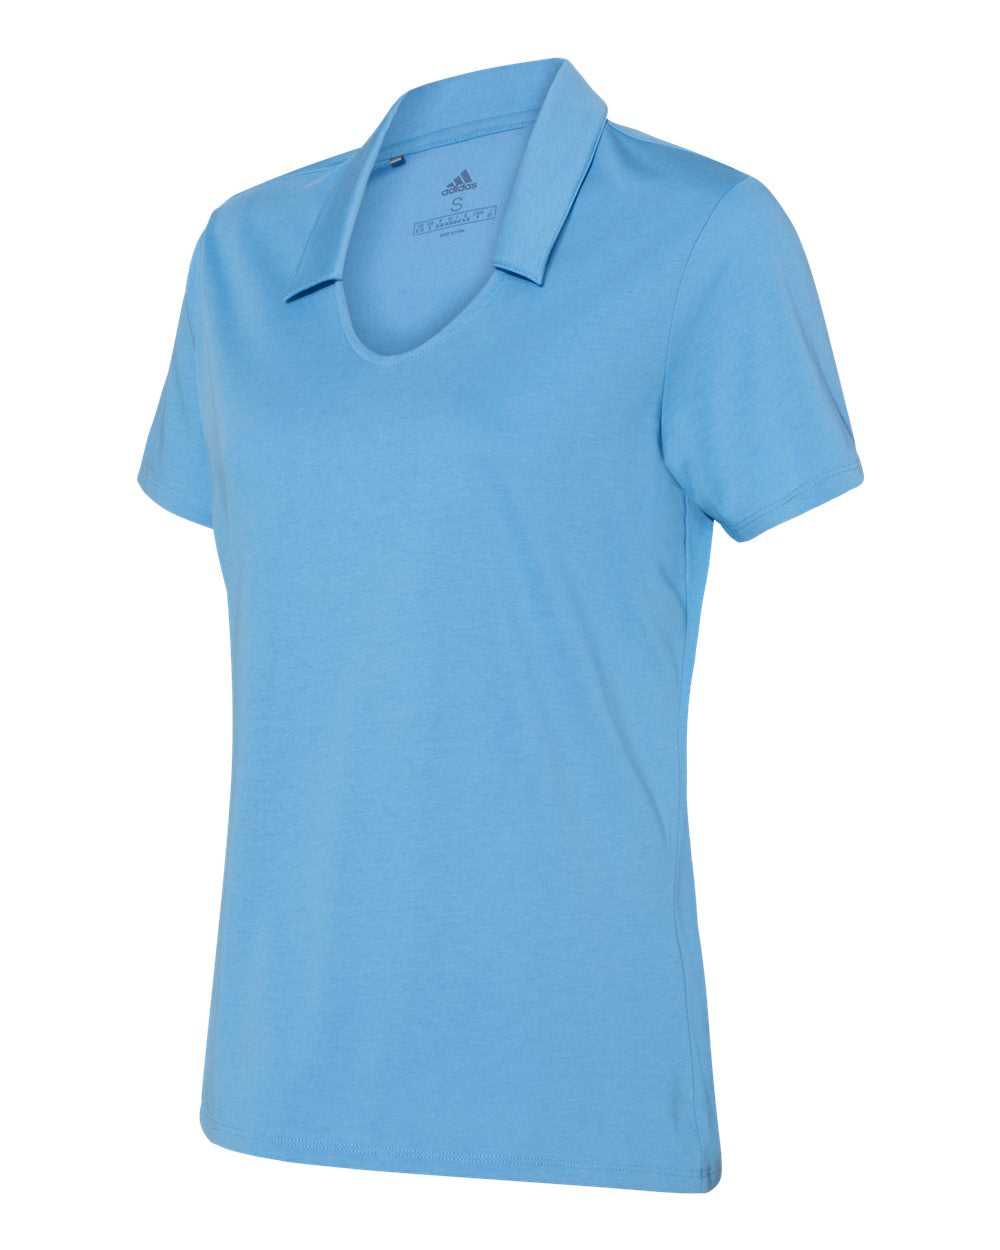 Adidas A323 Women's Cotton Blend Sport Shirt - Light Blue - HIT a Double